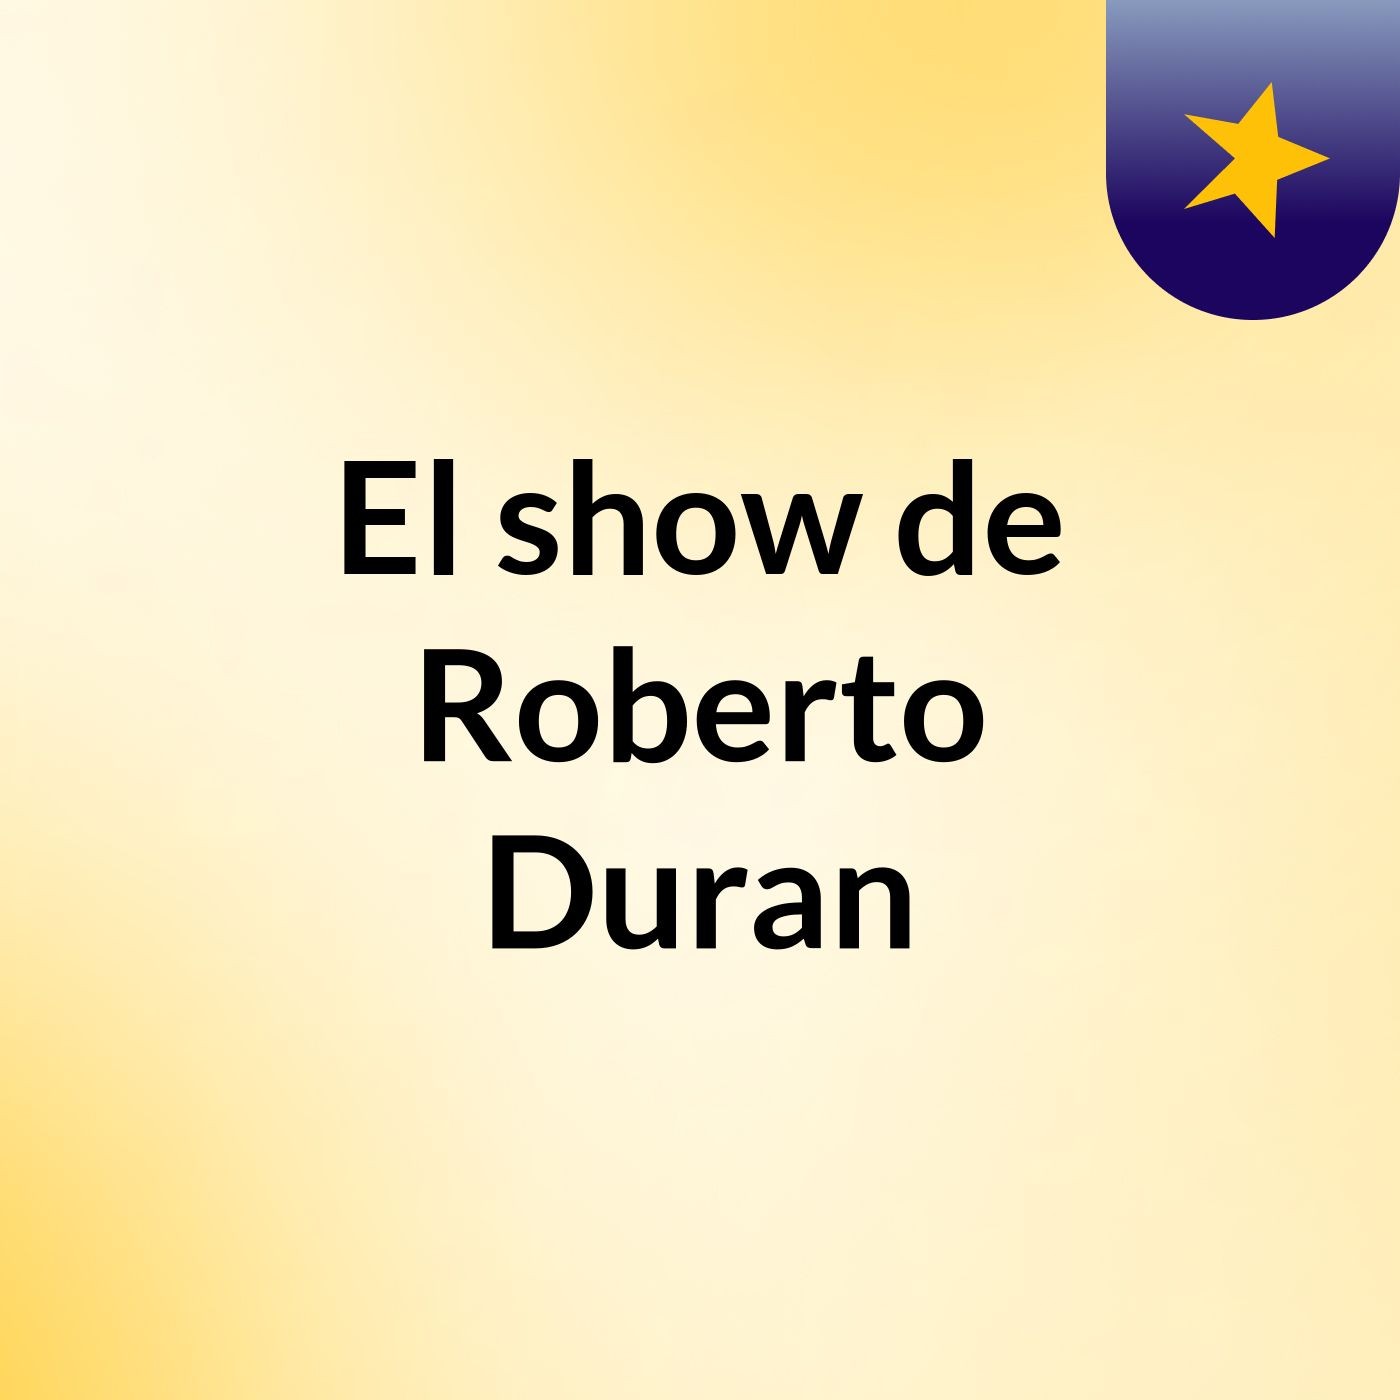 El show de Roberto Duran